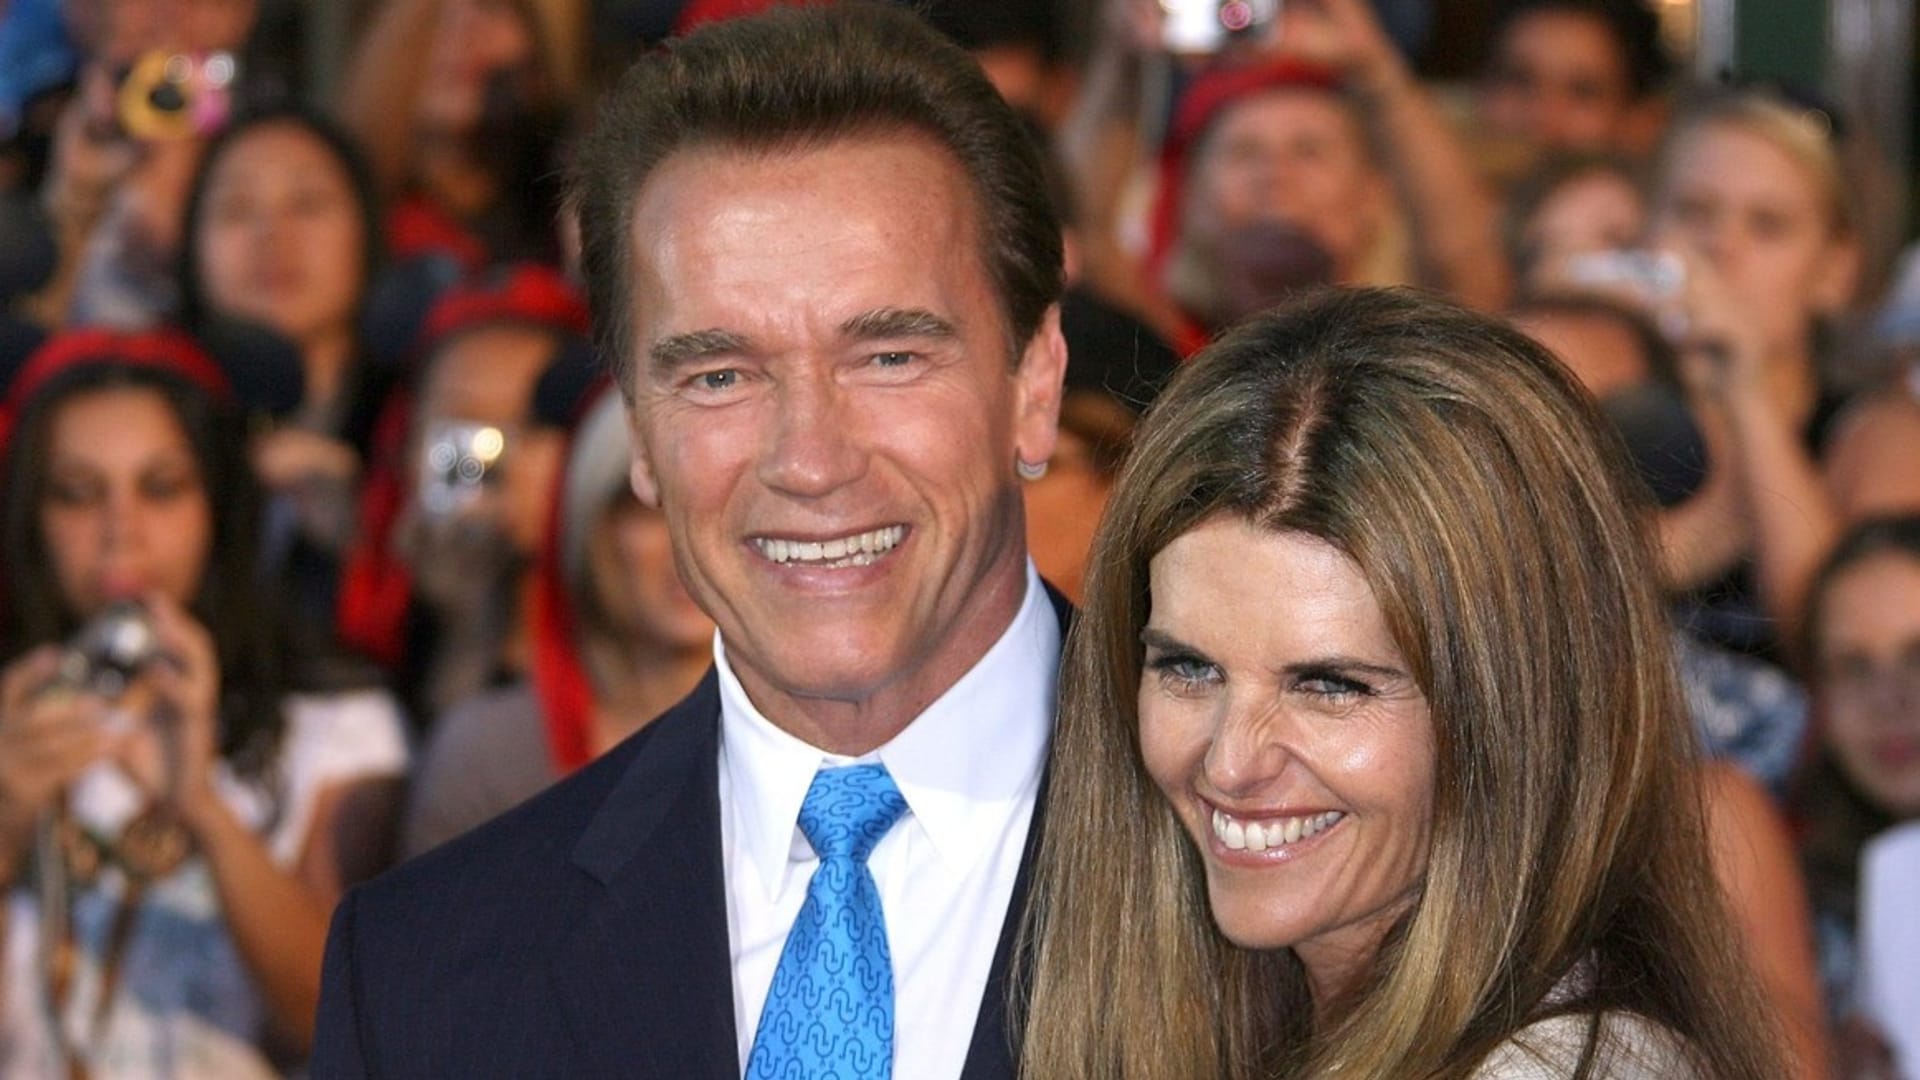 Arnold Schwarzenegger slaví 75. narozeniny. Jeho manželka Maria Schriver požádala o rozvod poté, co se dozvěděla o jeho nevěře a nemanželském synovi.